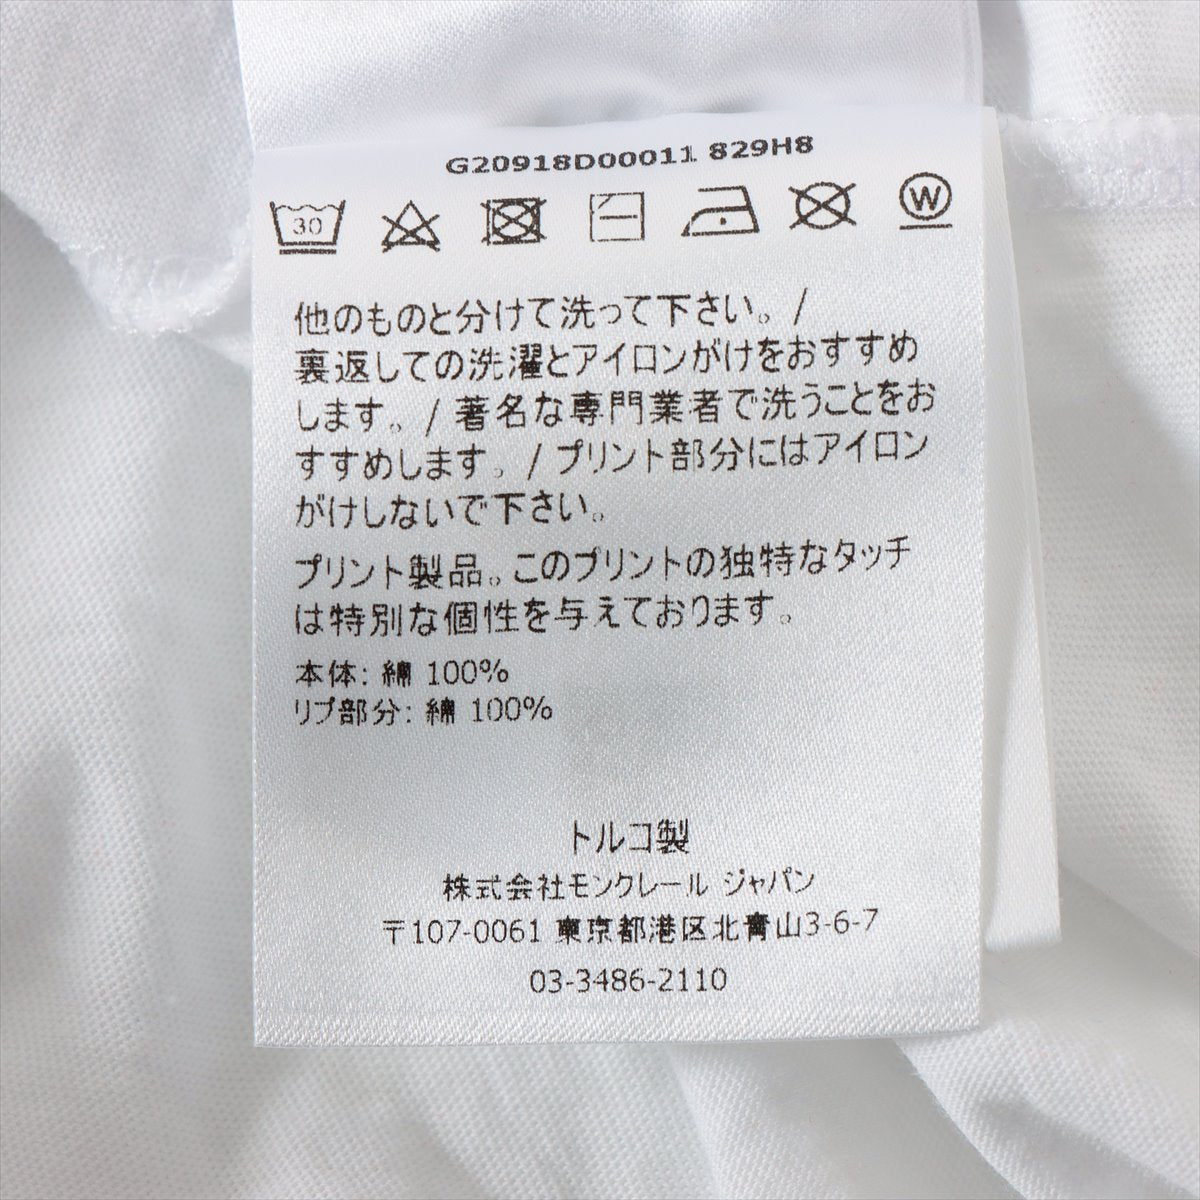 モンクレール 21年 ロゴワッペン 半袖Tシャツ メンズ 白 XL コットン MONCLER